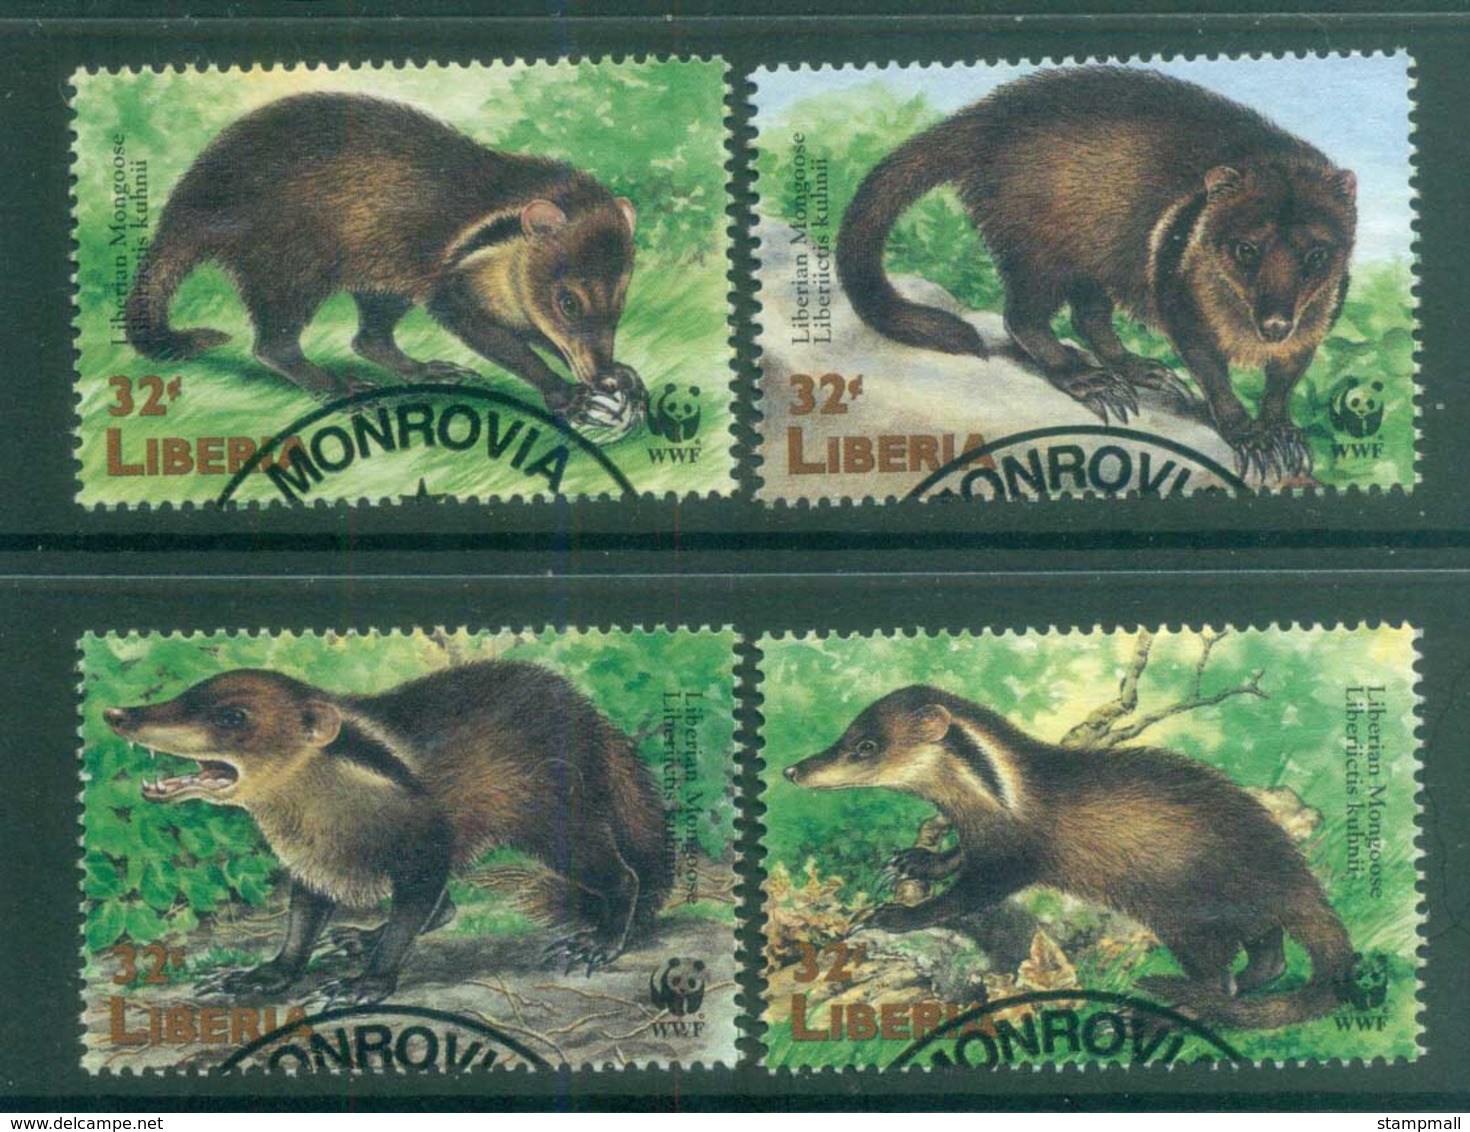 Liberia 1998 WWF Liberian Mongoose FU Lot81585 - Liberia